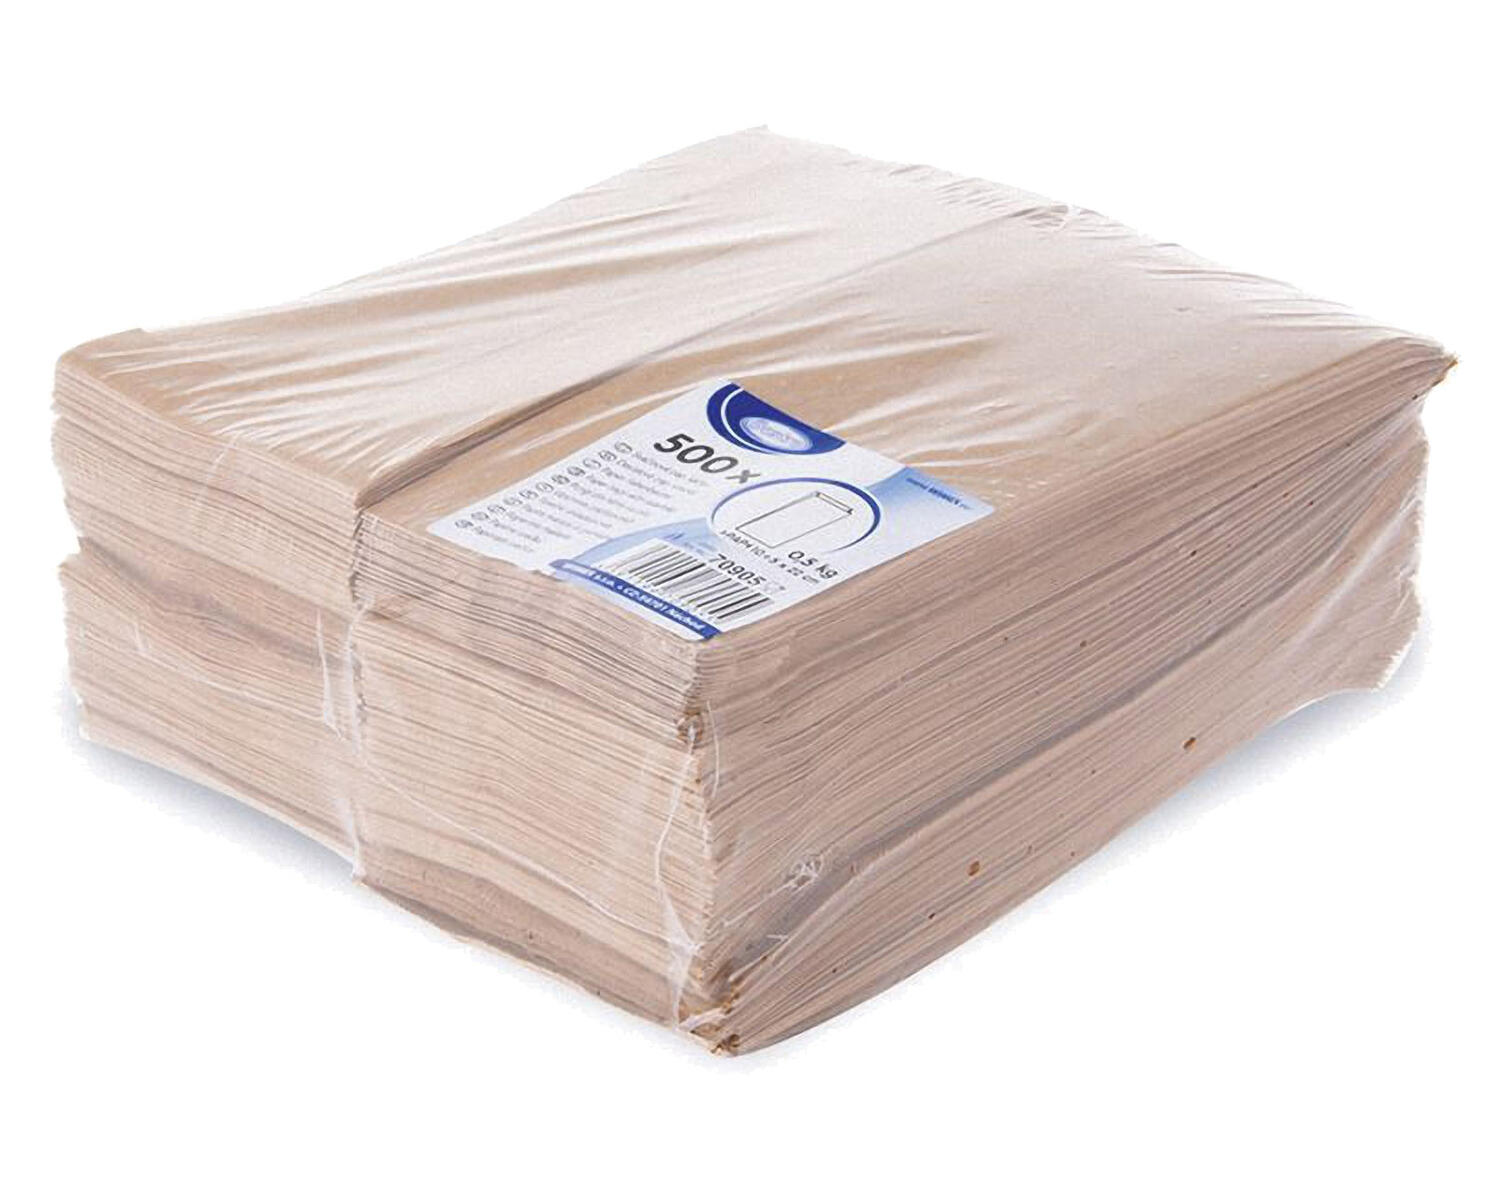 Papierfaltenbeutel Papiertüten braun 10+5 x 22 cm für ca. 0,5kg Inhalt, 500 Stk.